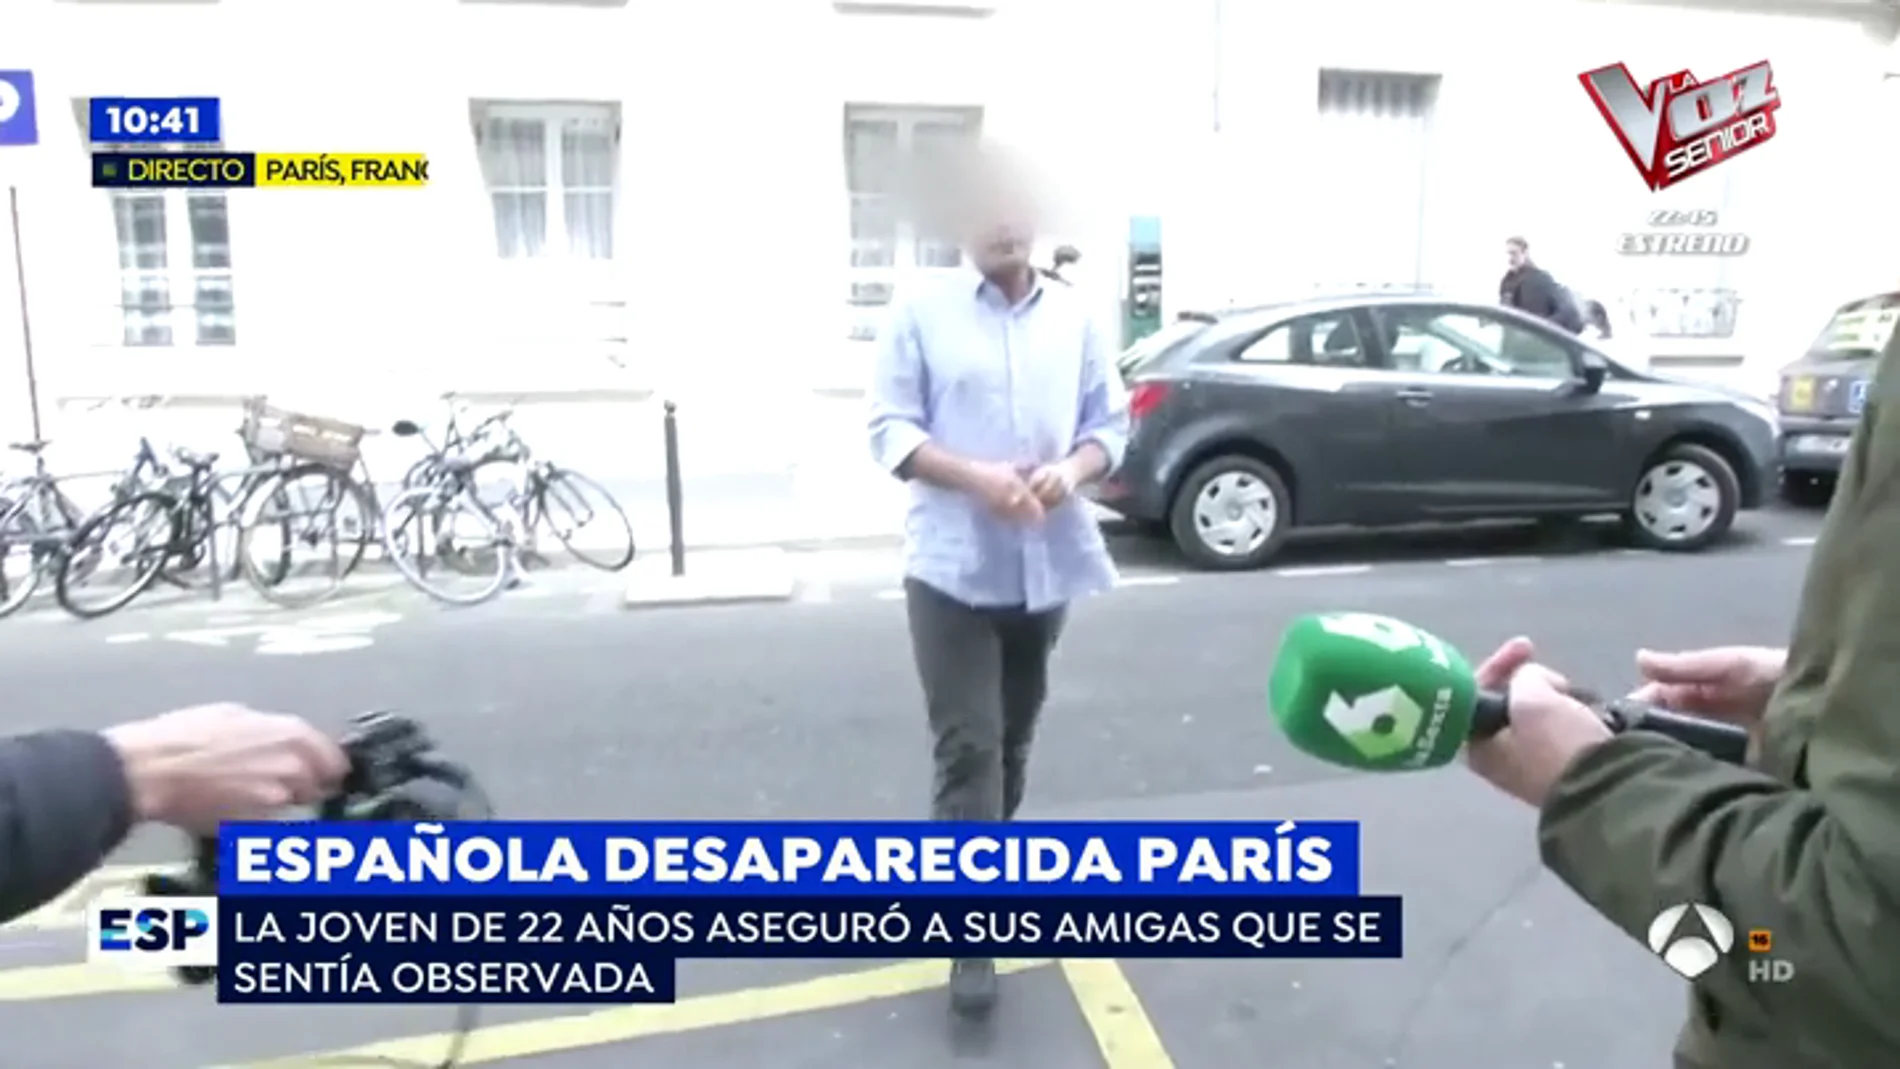 Española desaparecida en París